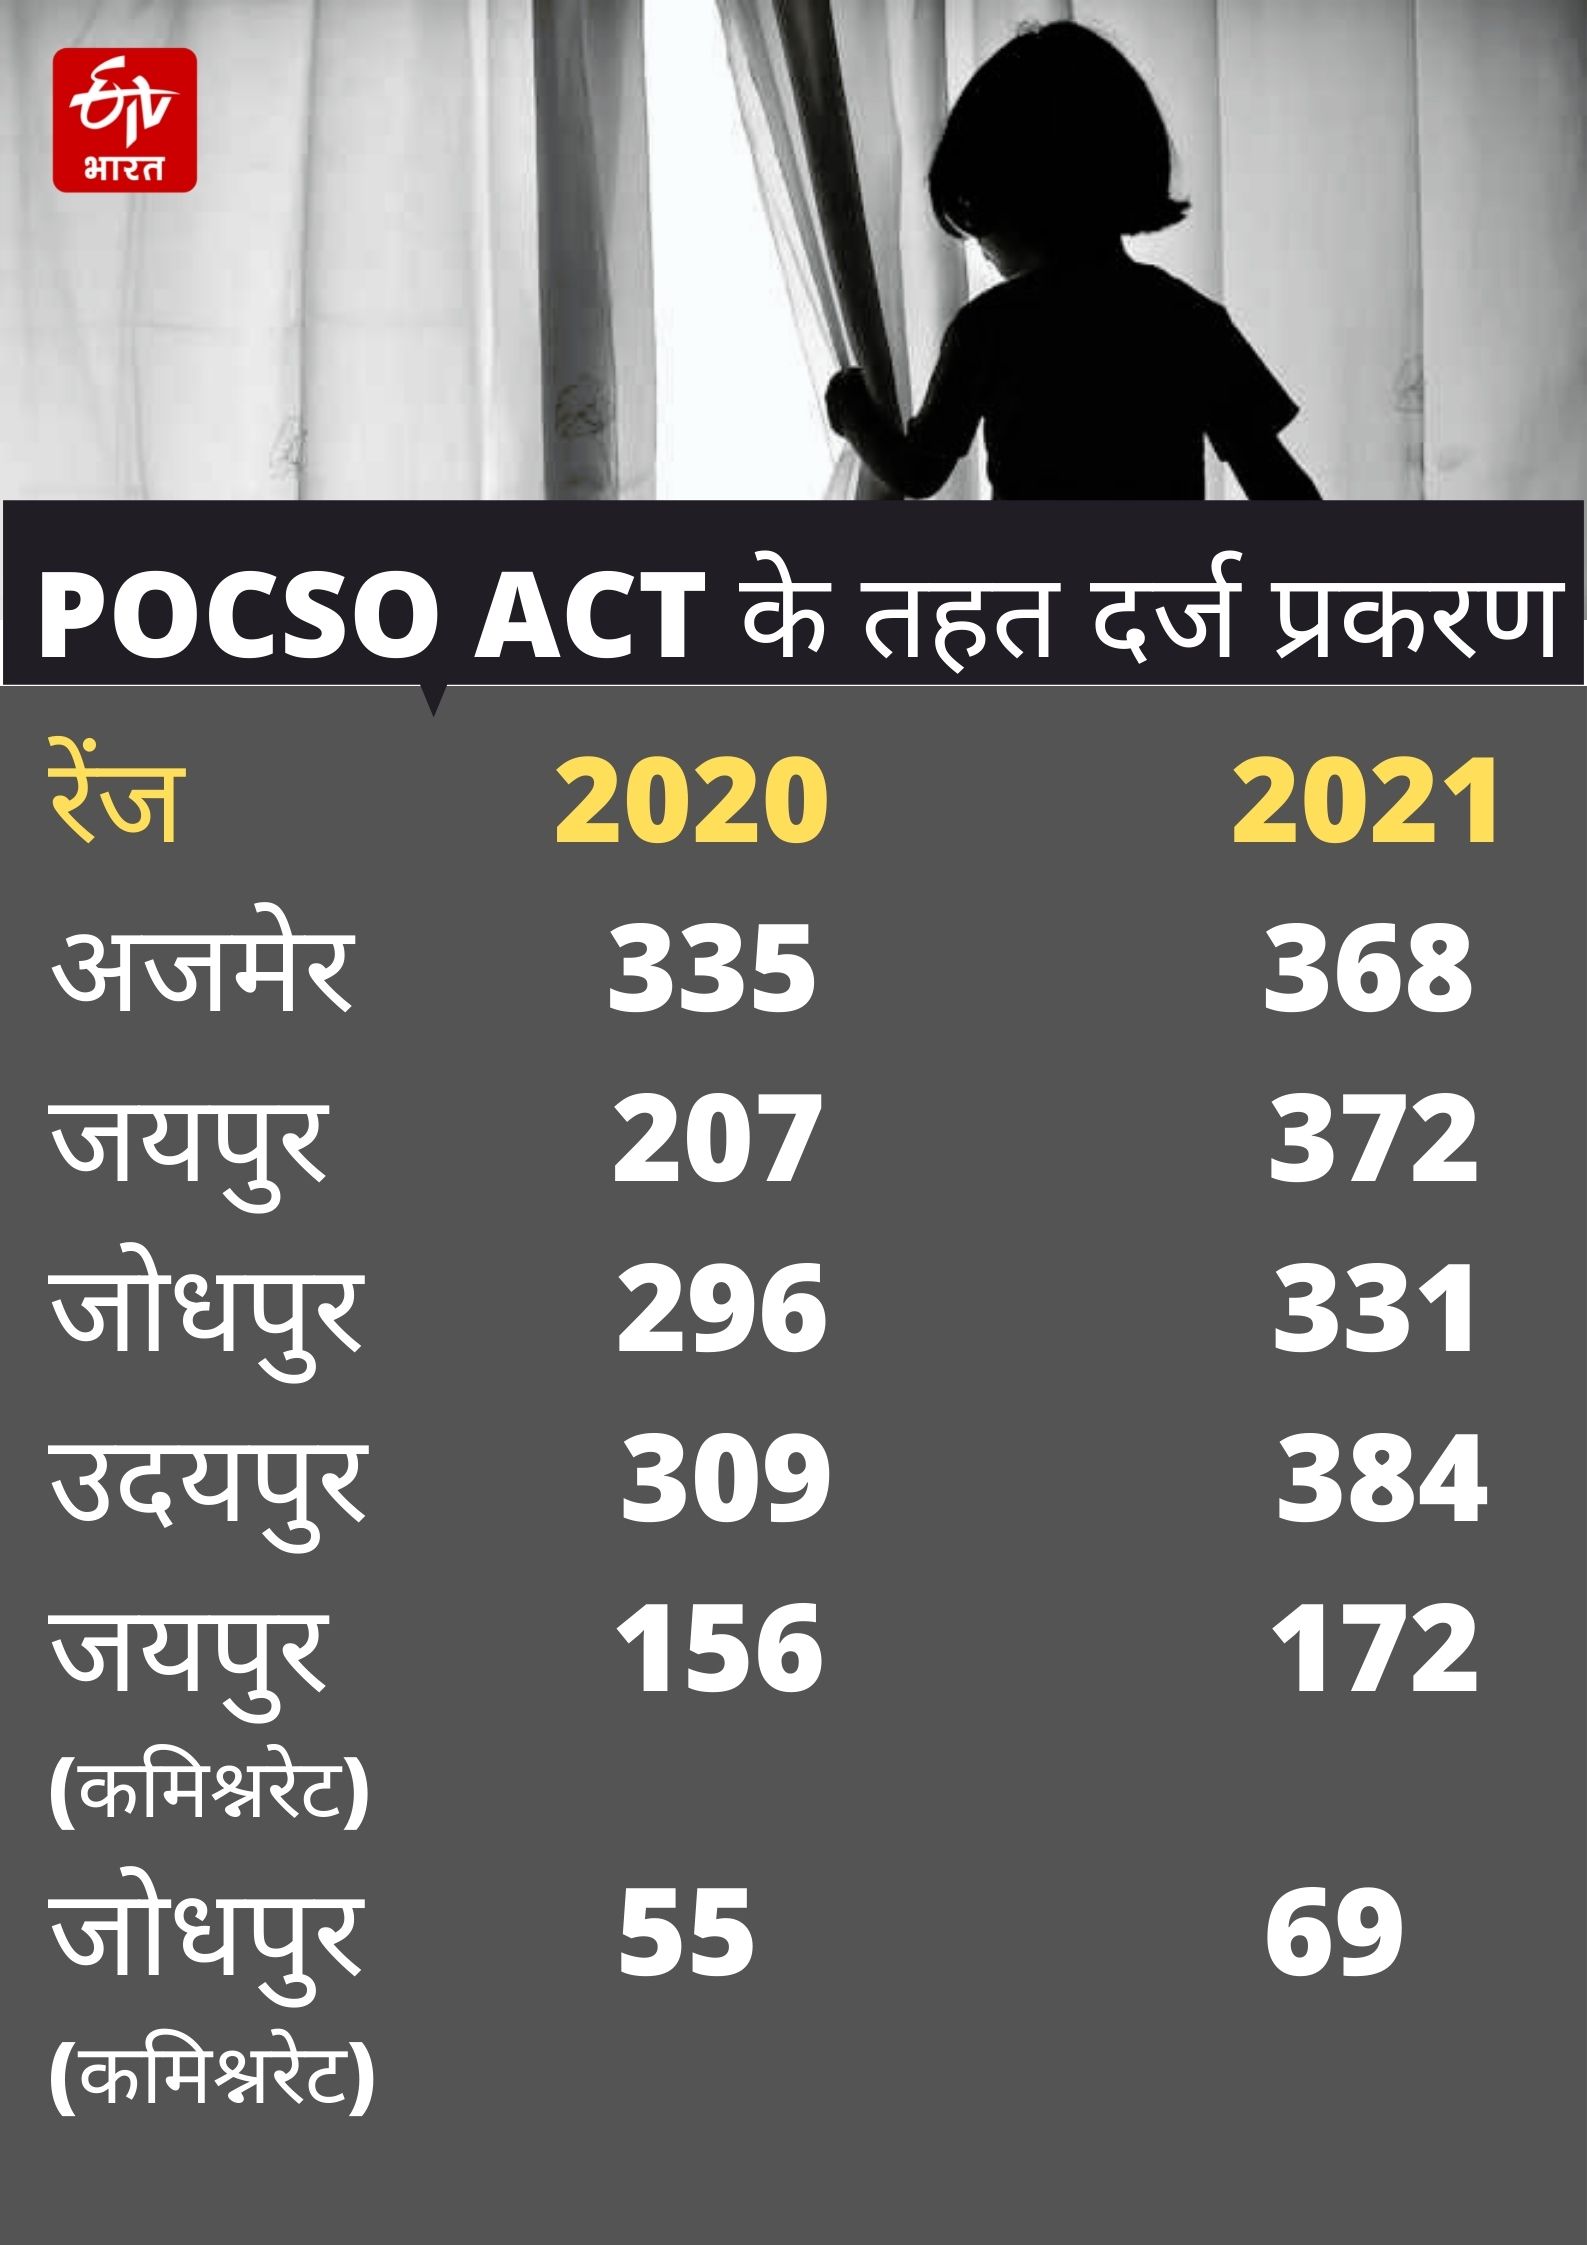 राजस्थान में POCSO ACT के मामले